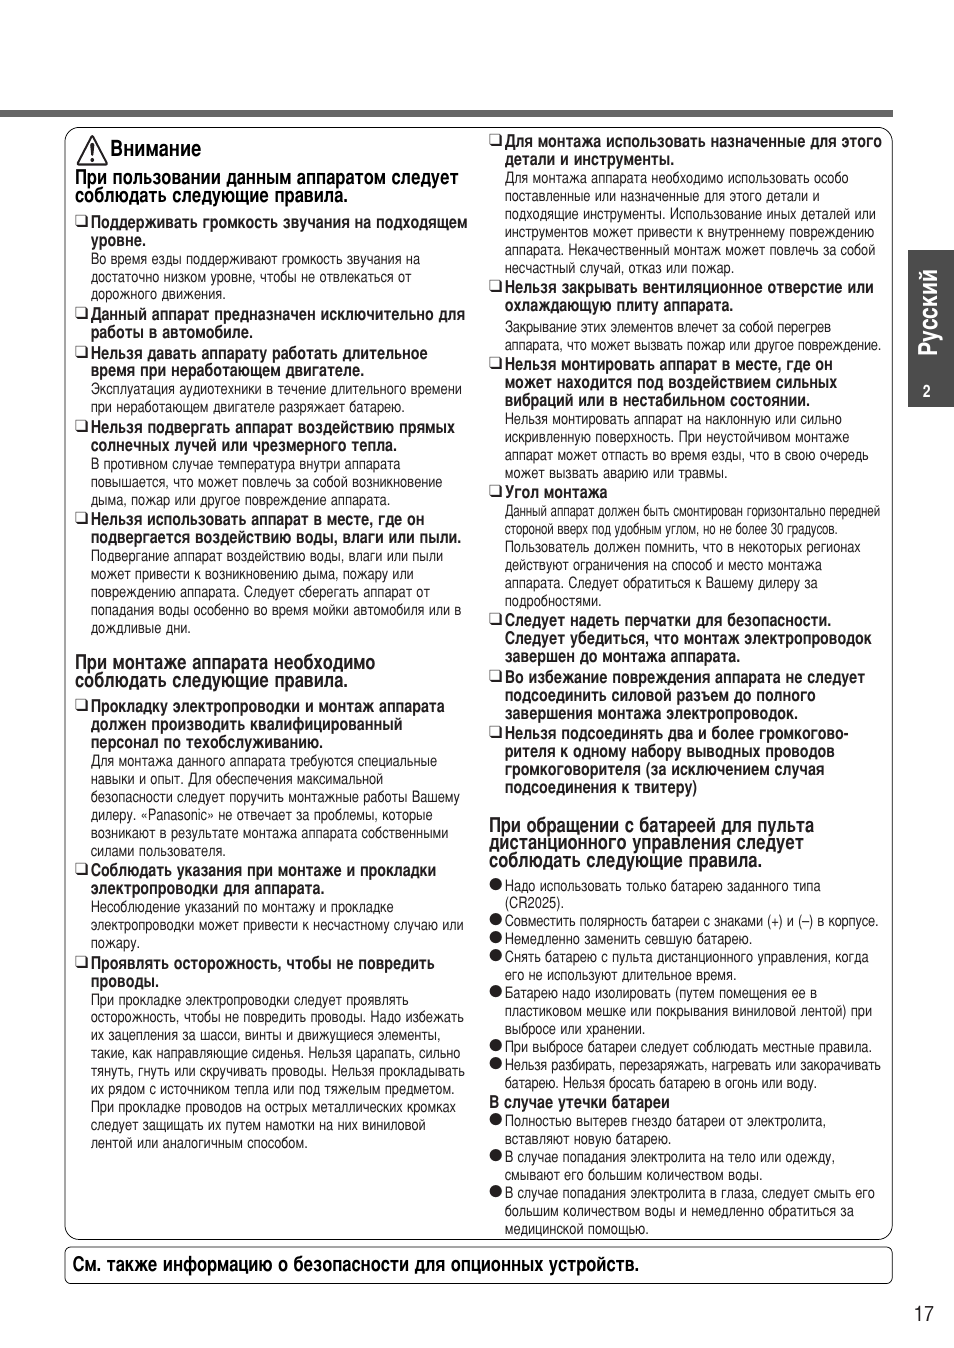 Двнимание | Инструкция по эксплуатации Panasonic CQ-C5153W | Страница 35 / 48